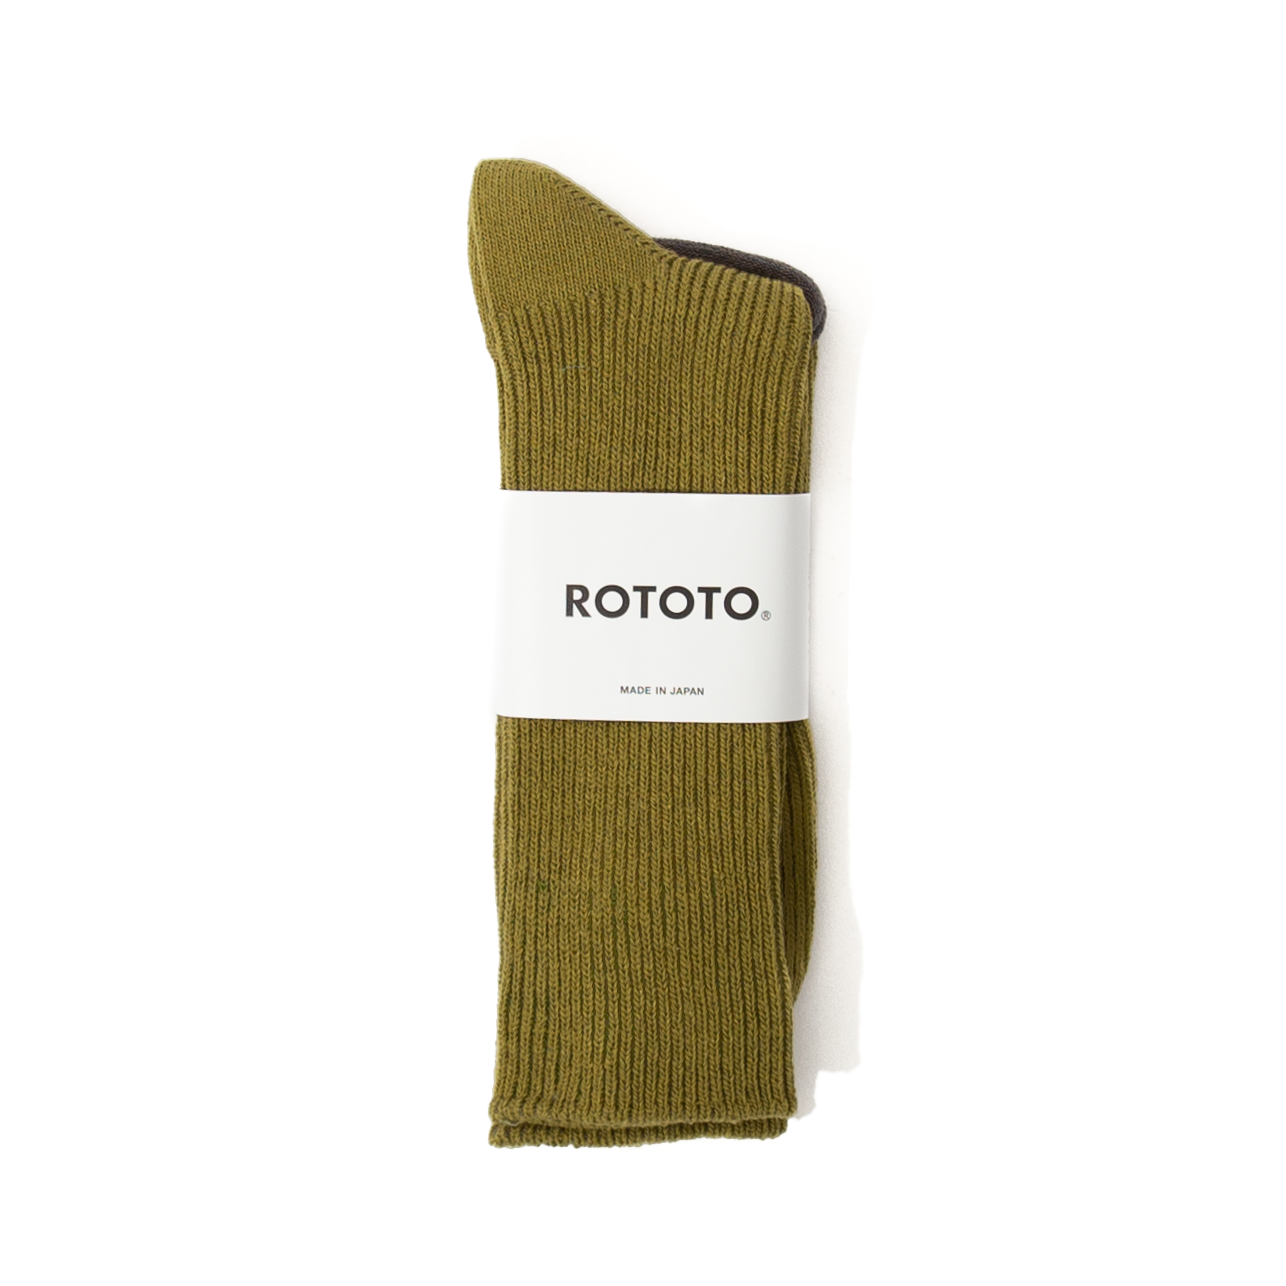 RoToTo Recycled Cotton Rib Socks